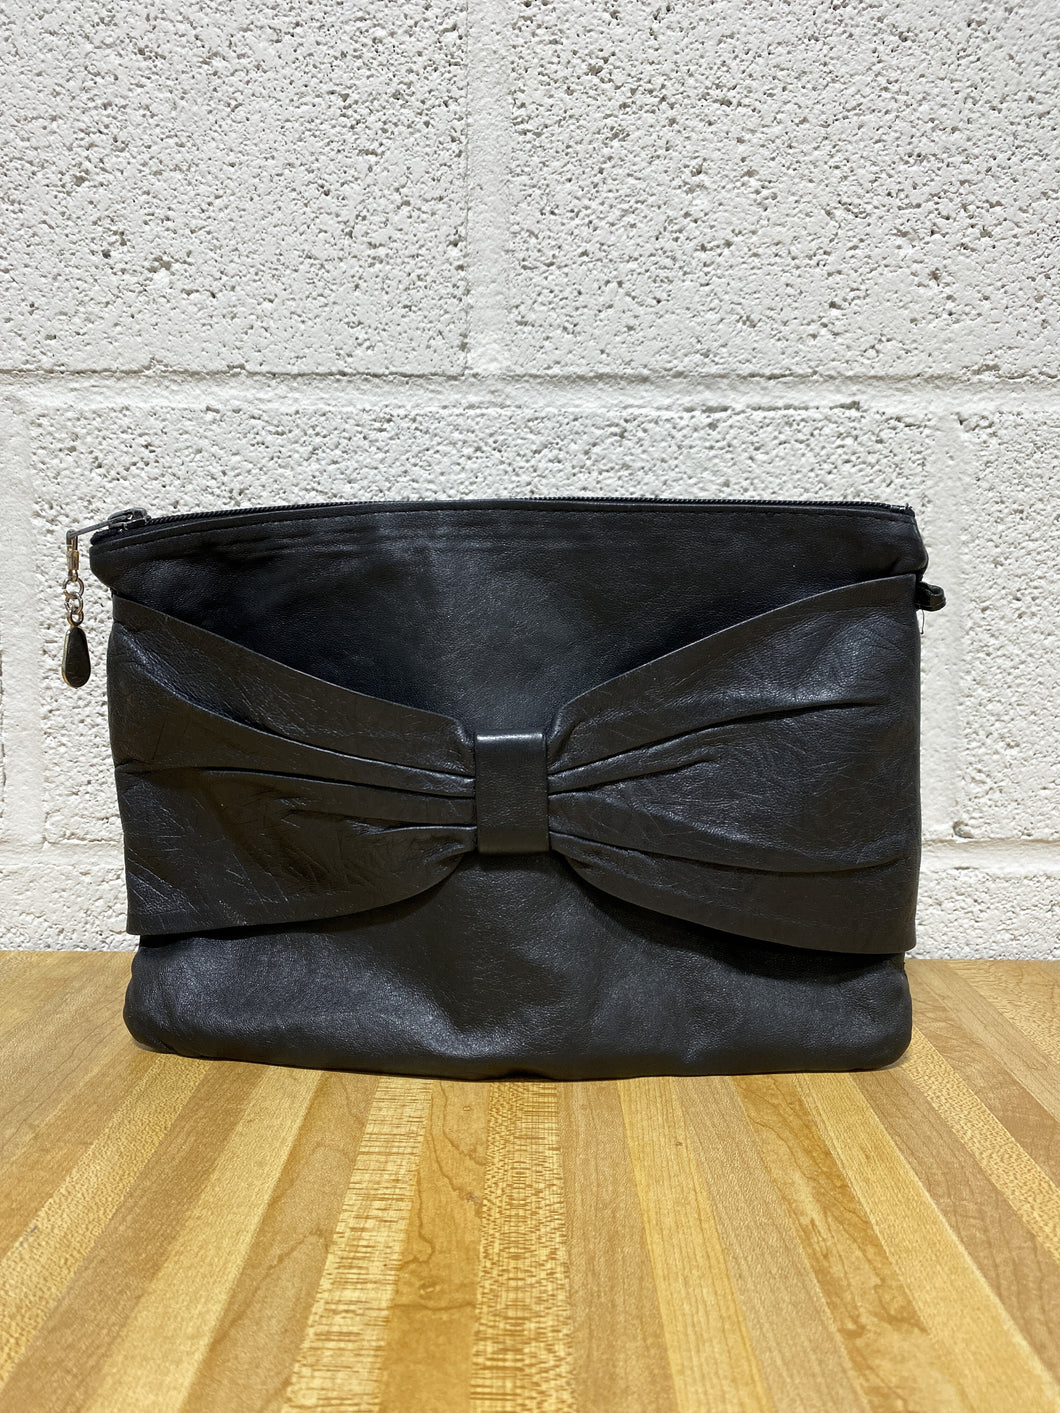 Vintage Soft Black Leather Handbag